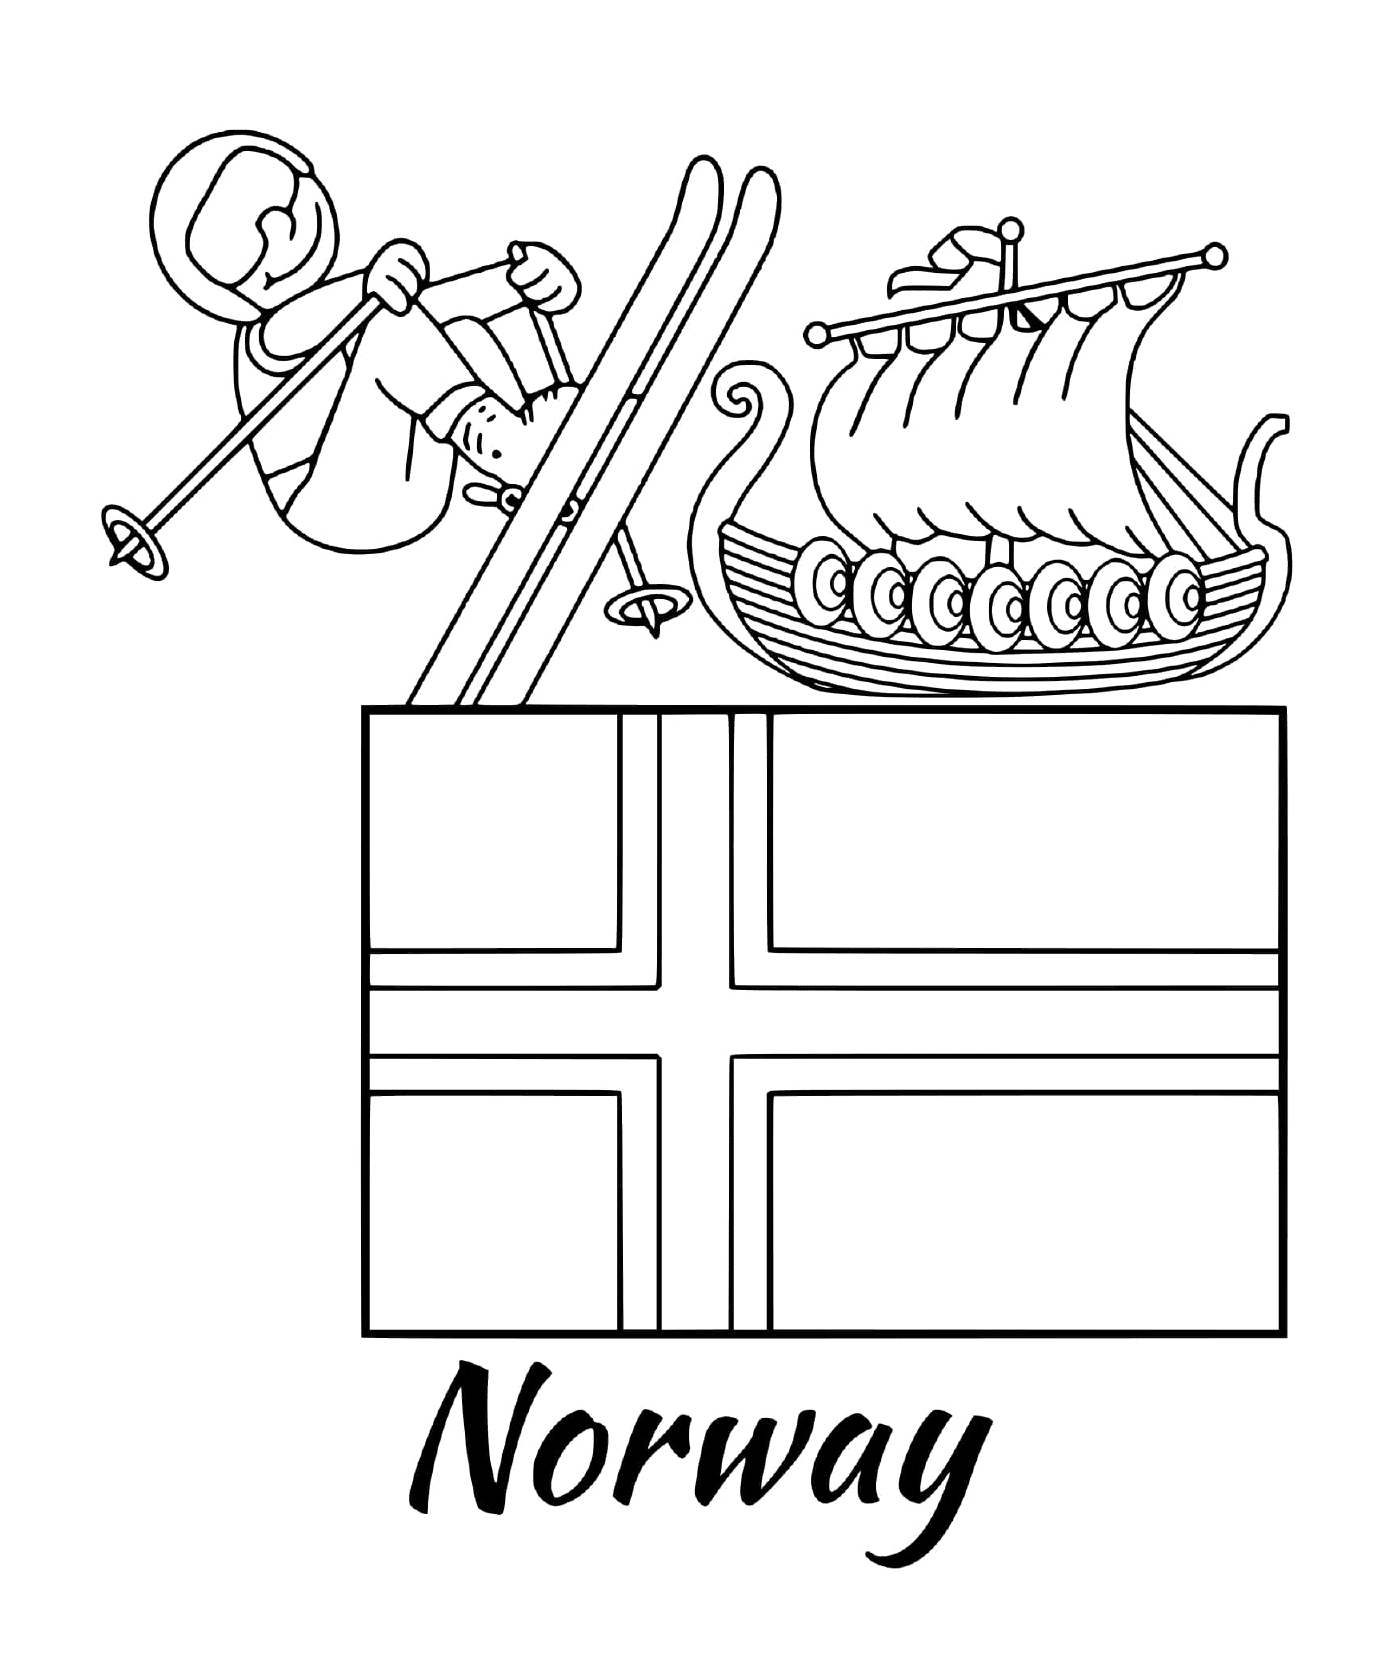  挪威国旗,滑雪 